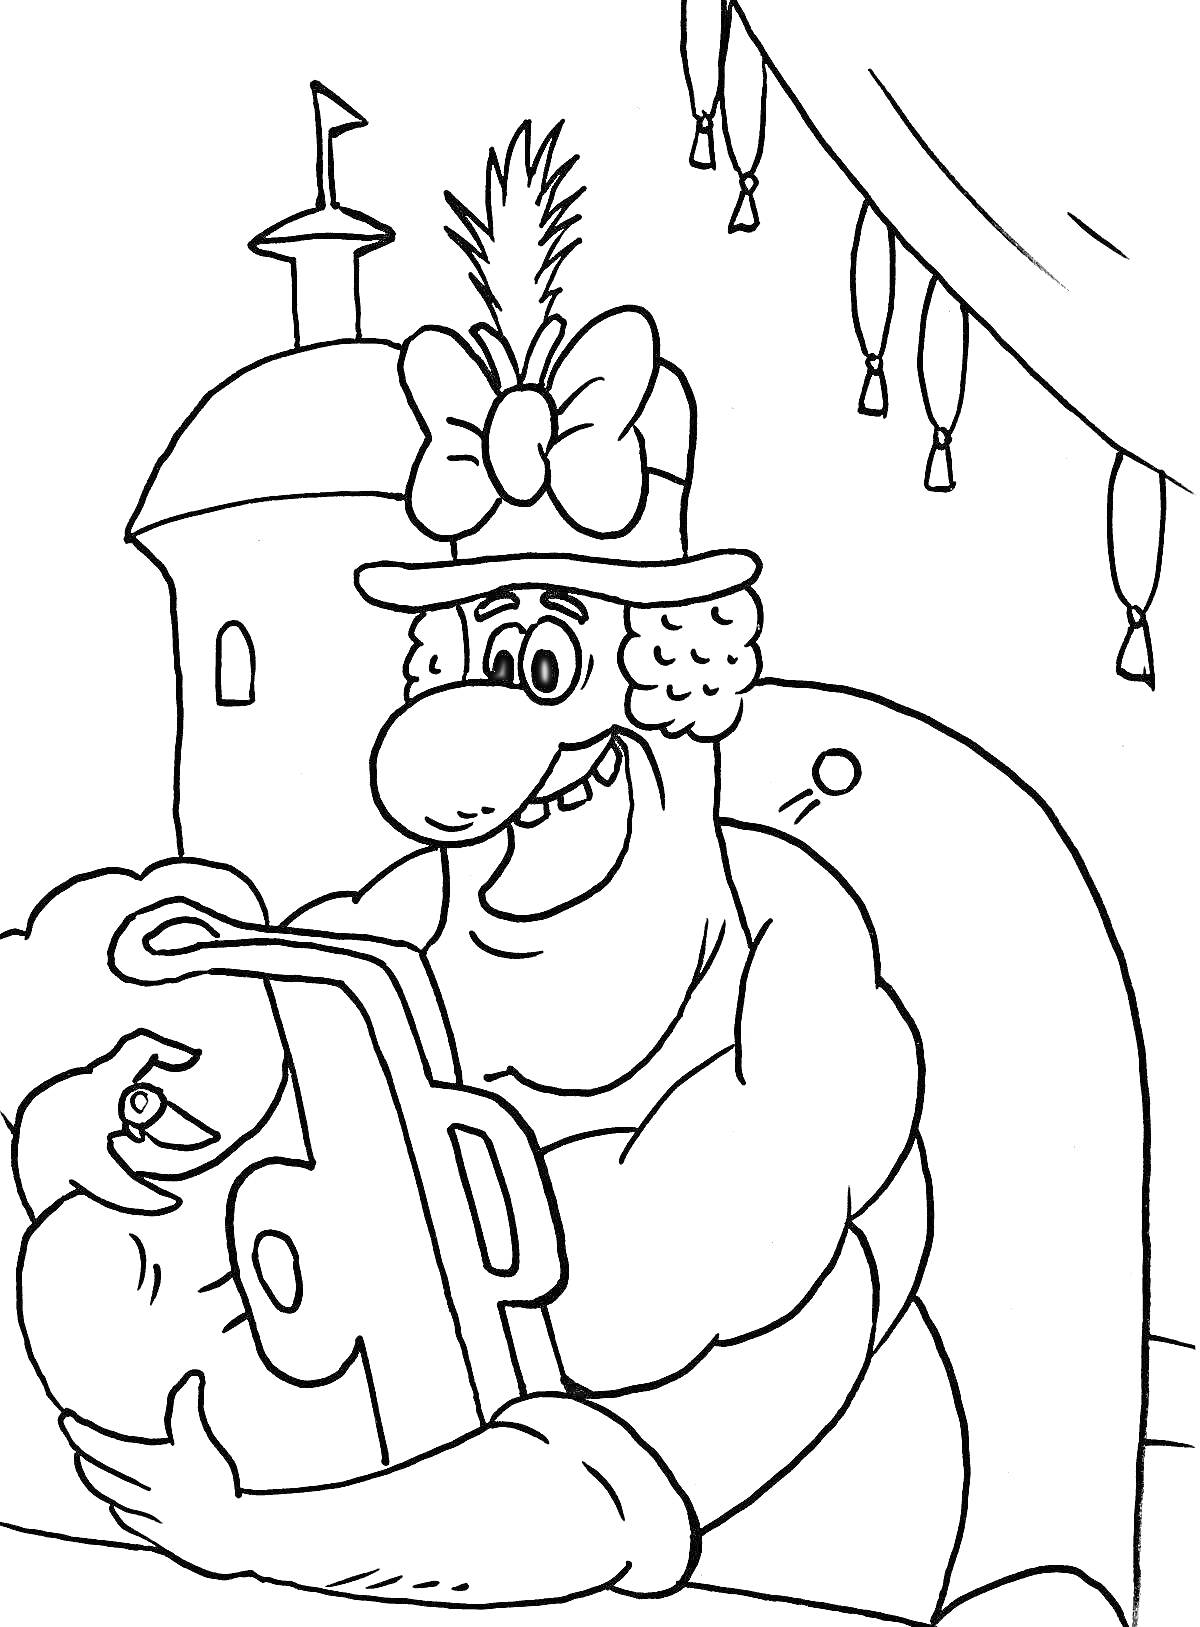 Раскраска Мужчина в шляпе с перьями и бантом, держащий стержневой телефон, слева замок, на заднем плане занавески